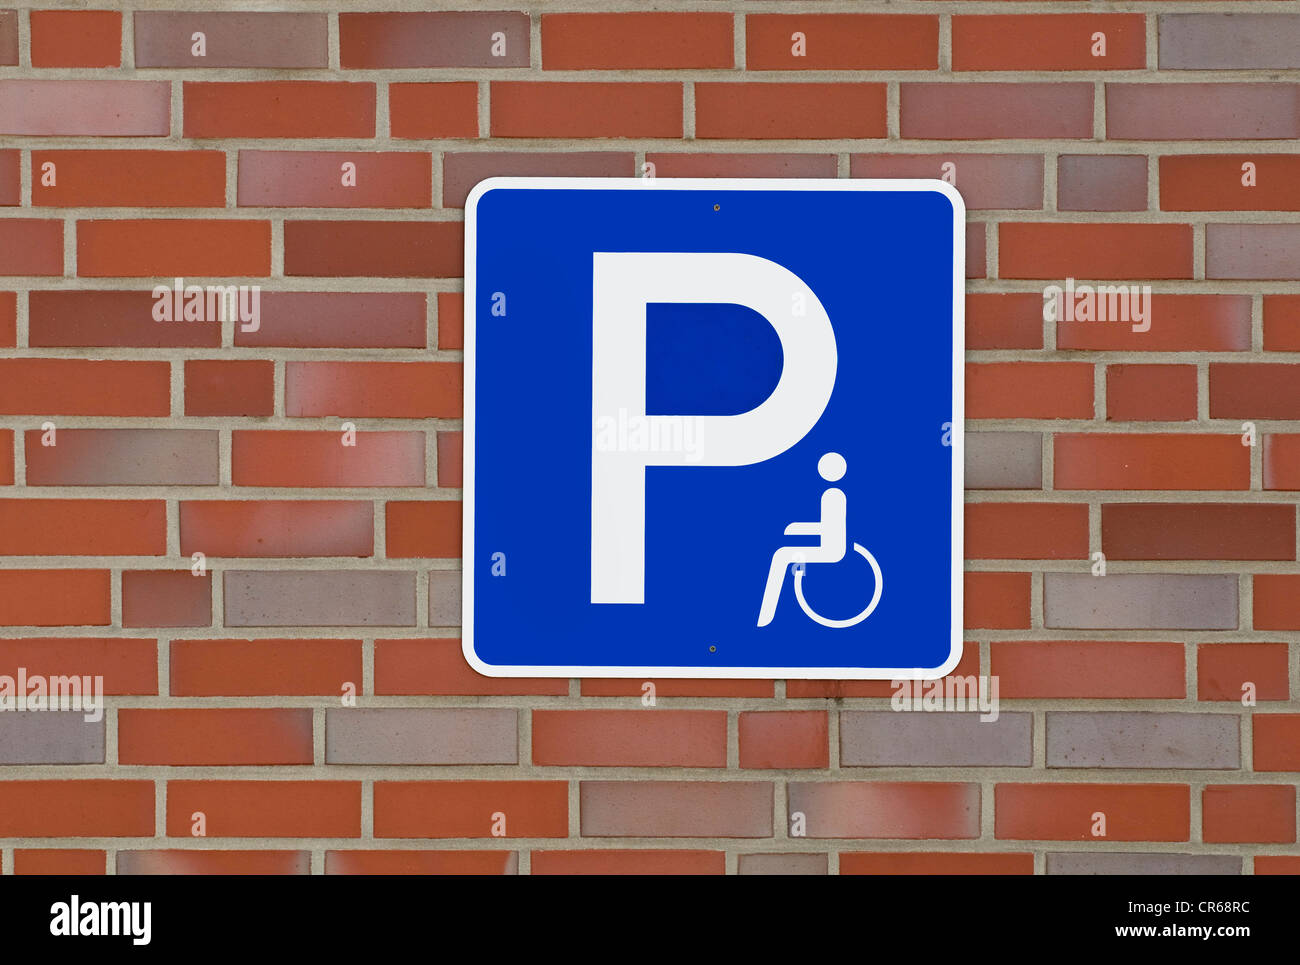 Signer avec pictogramme sur mur de brique : mobilité parking gratuit Banque D'Images